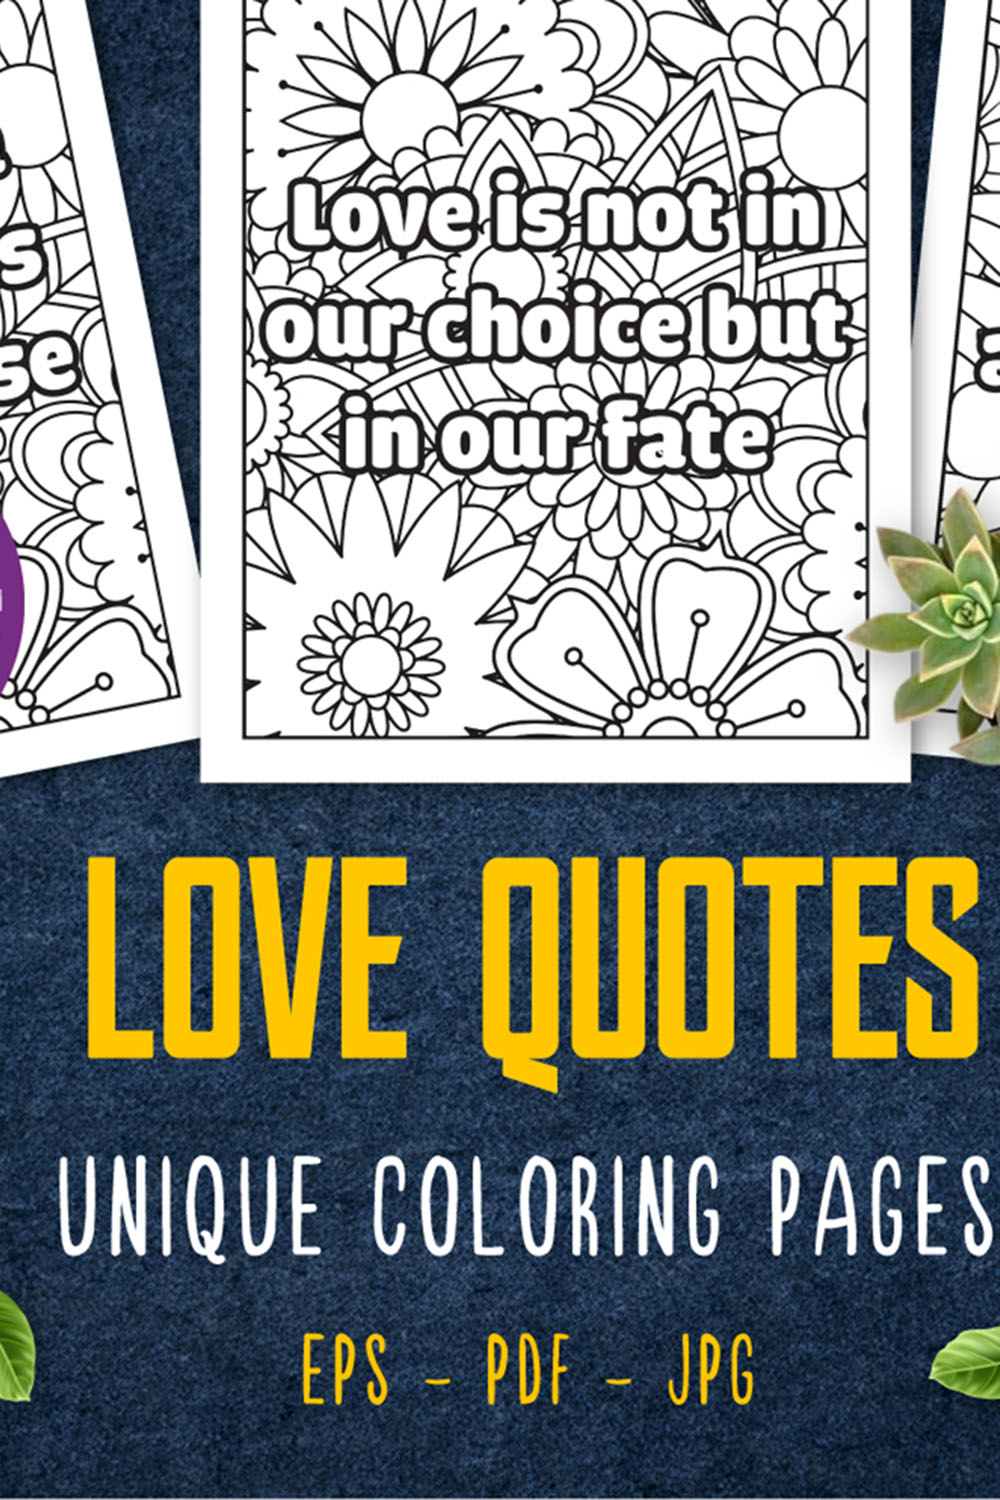 65 Love Quotes Unique Coloring Pages pinterest preview image.